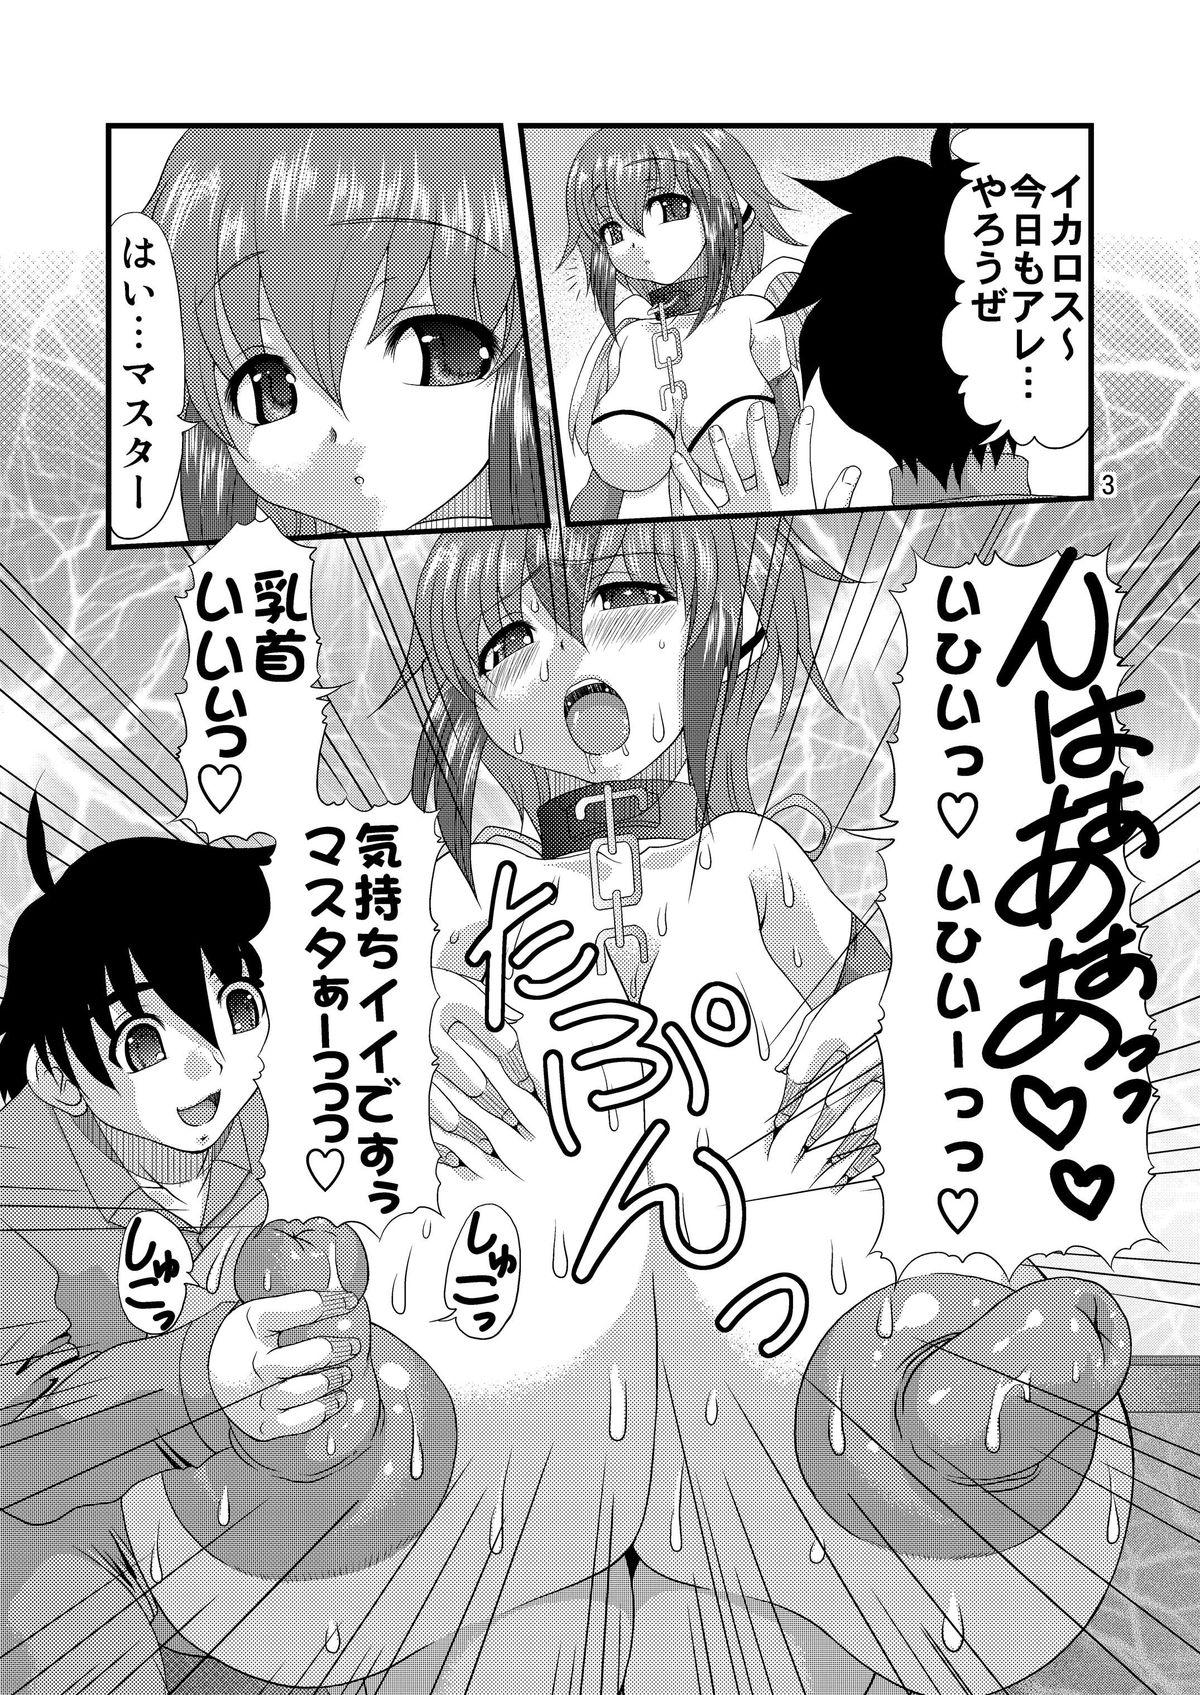 Puta Chichi to Shiri to no Semegiai - Sora no otoshimono Anal Gape - Page 2